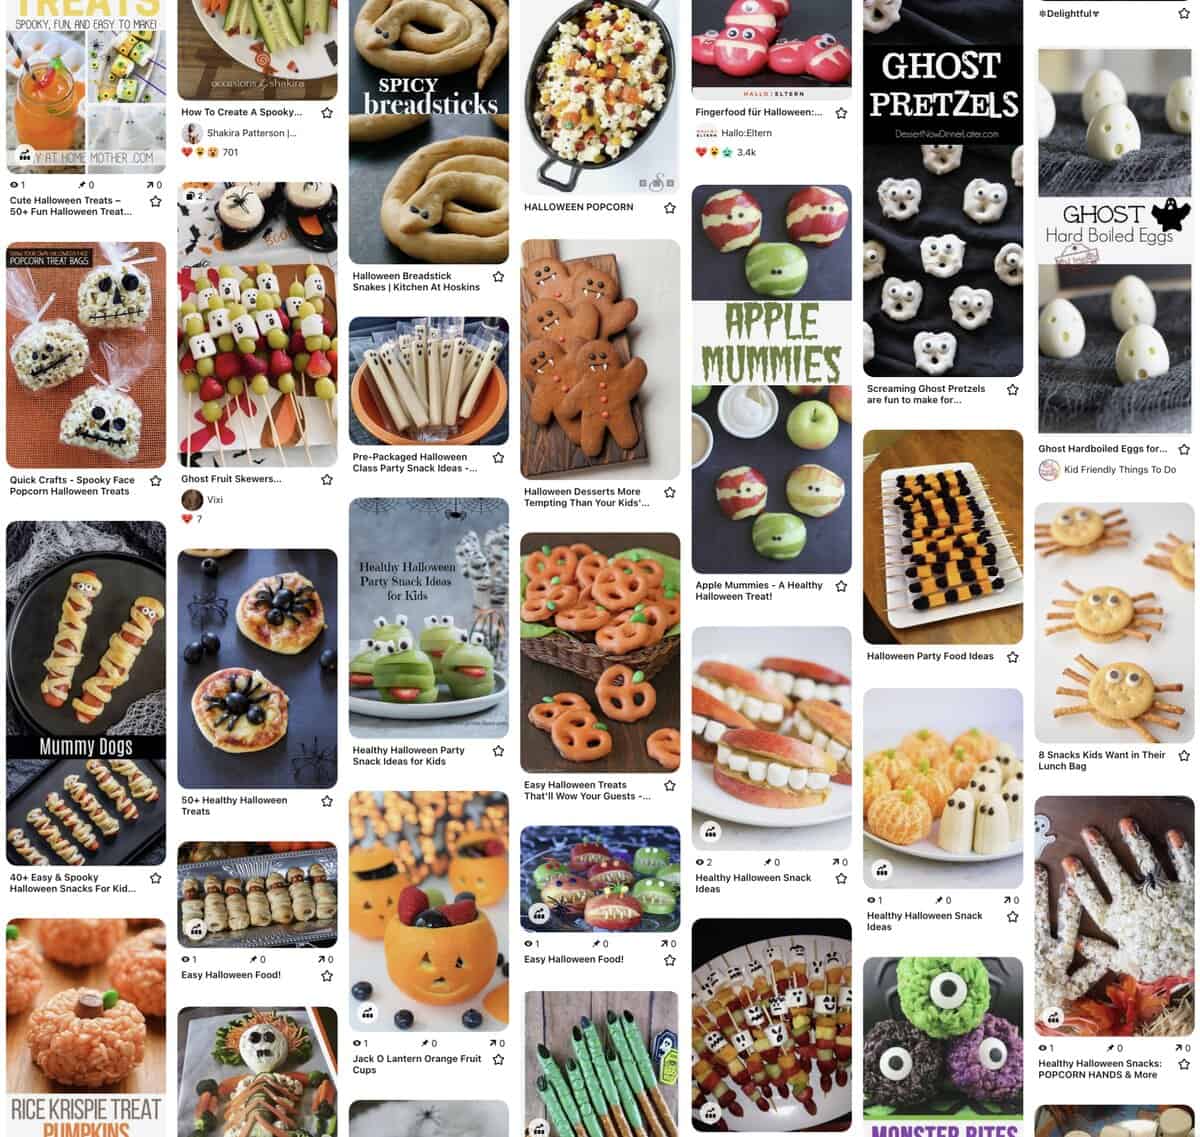 Fun Food Halloween Treats on Pinterest